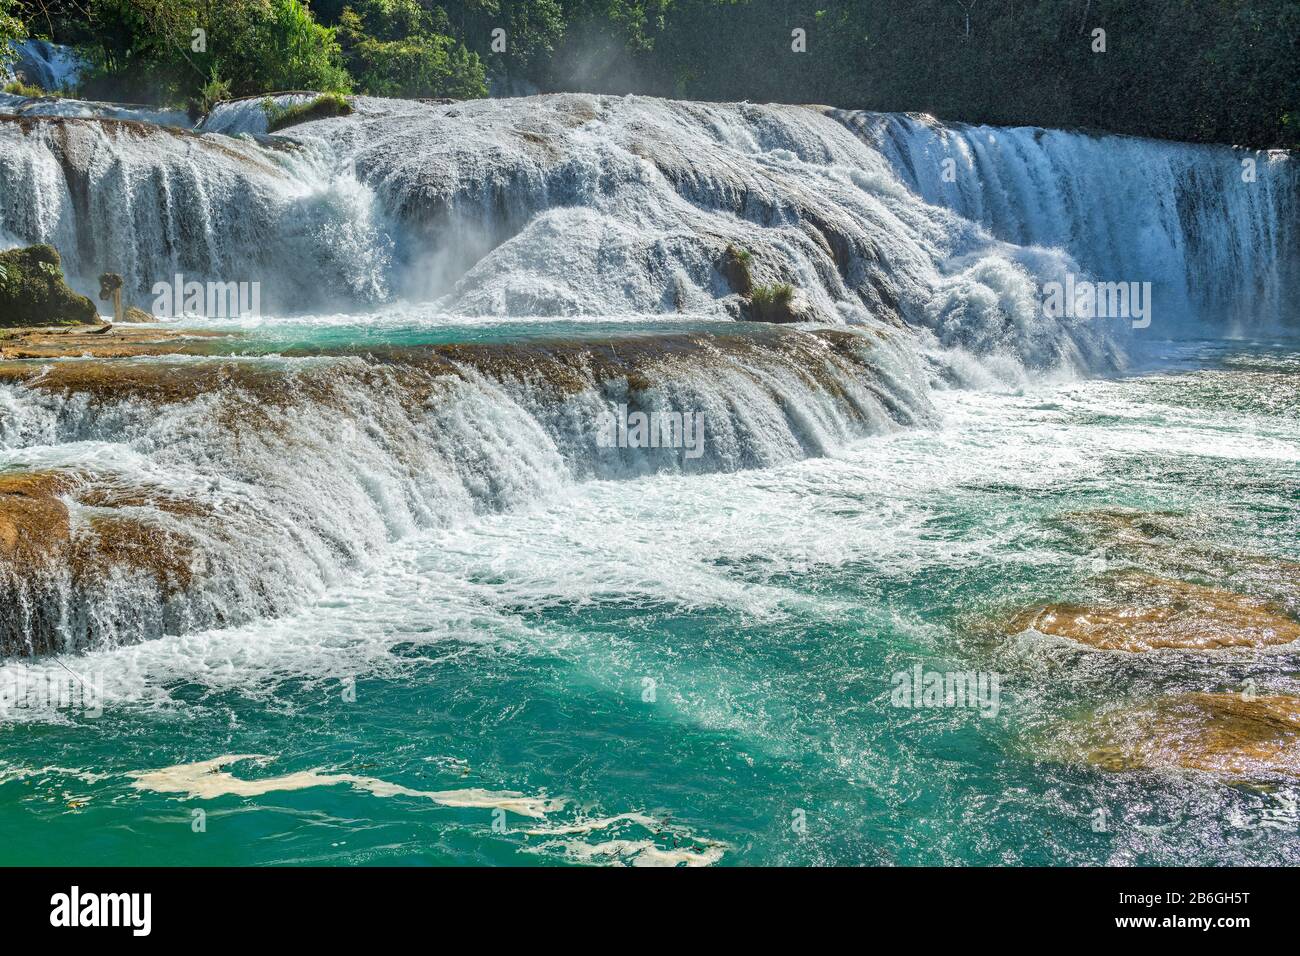 Le acque turchesi della cascata di Agua Azul che scorrono con la forza creando un sacco di spruzzi nell'aria nella foresta pluviale di Chiapas vicino Palenque, Messico. Foto Stock